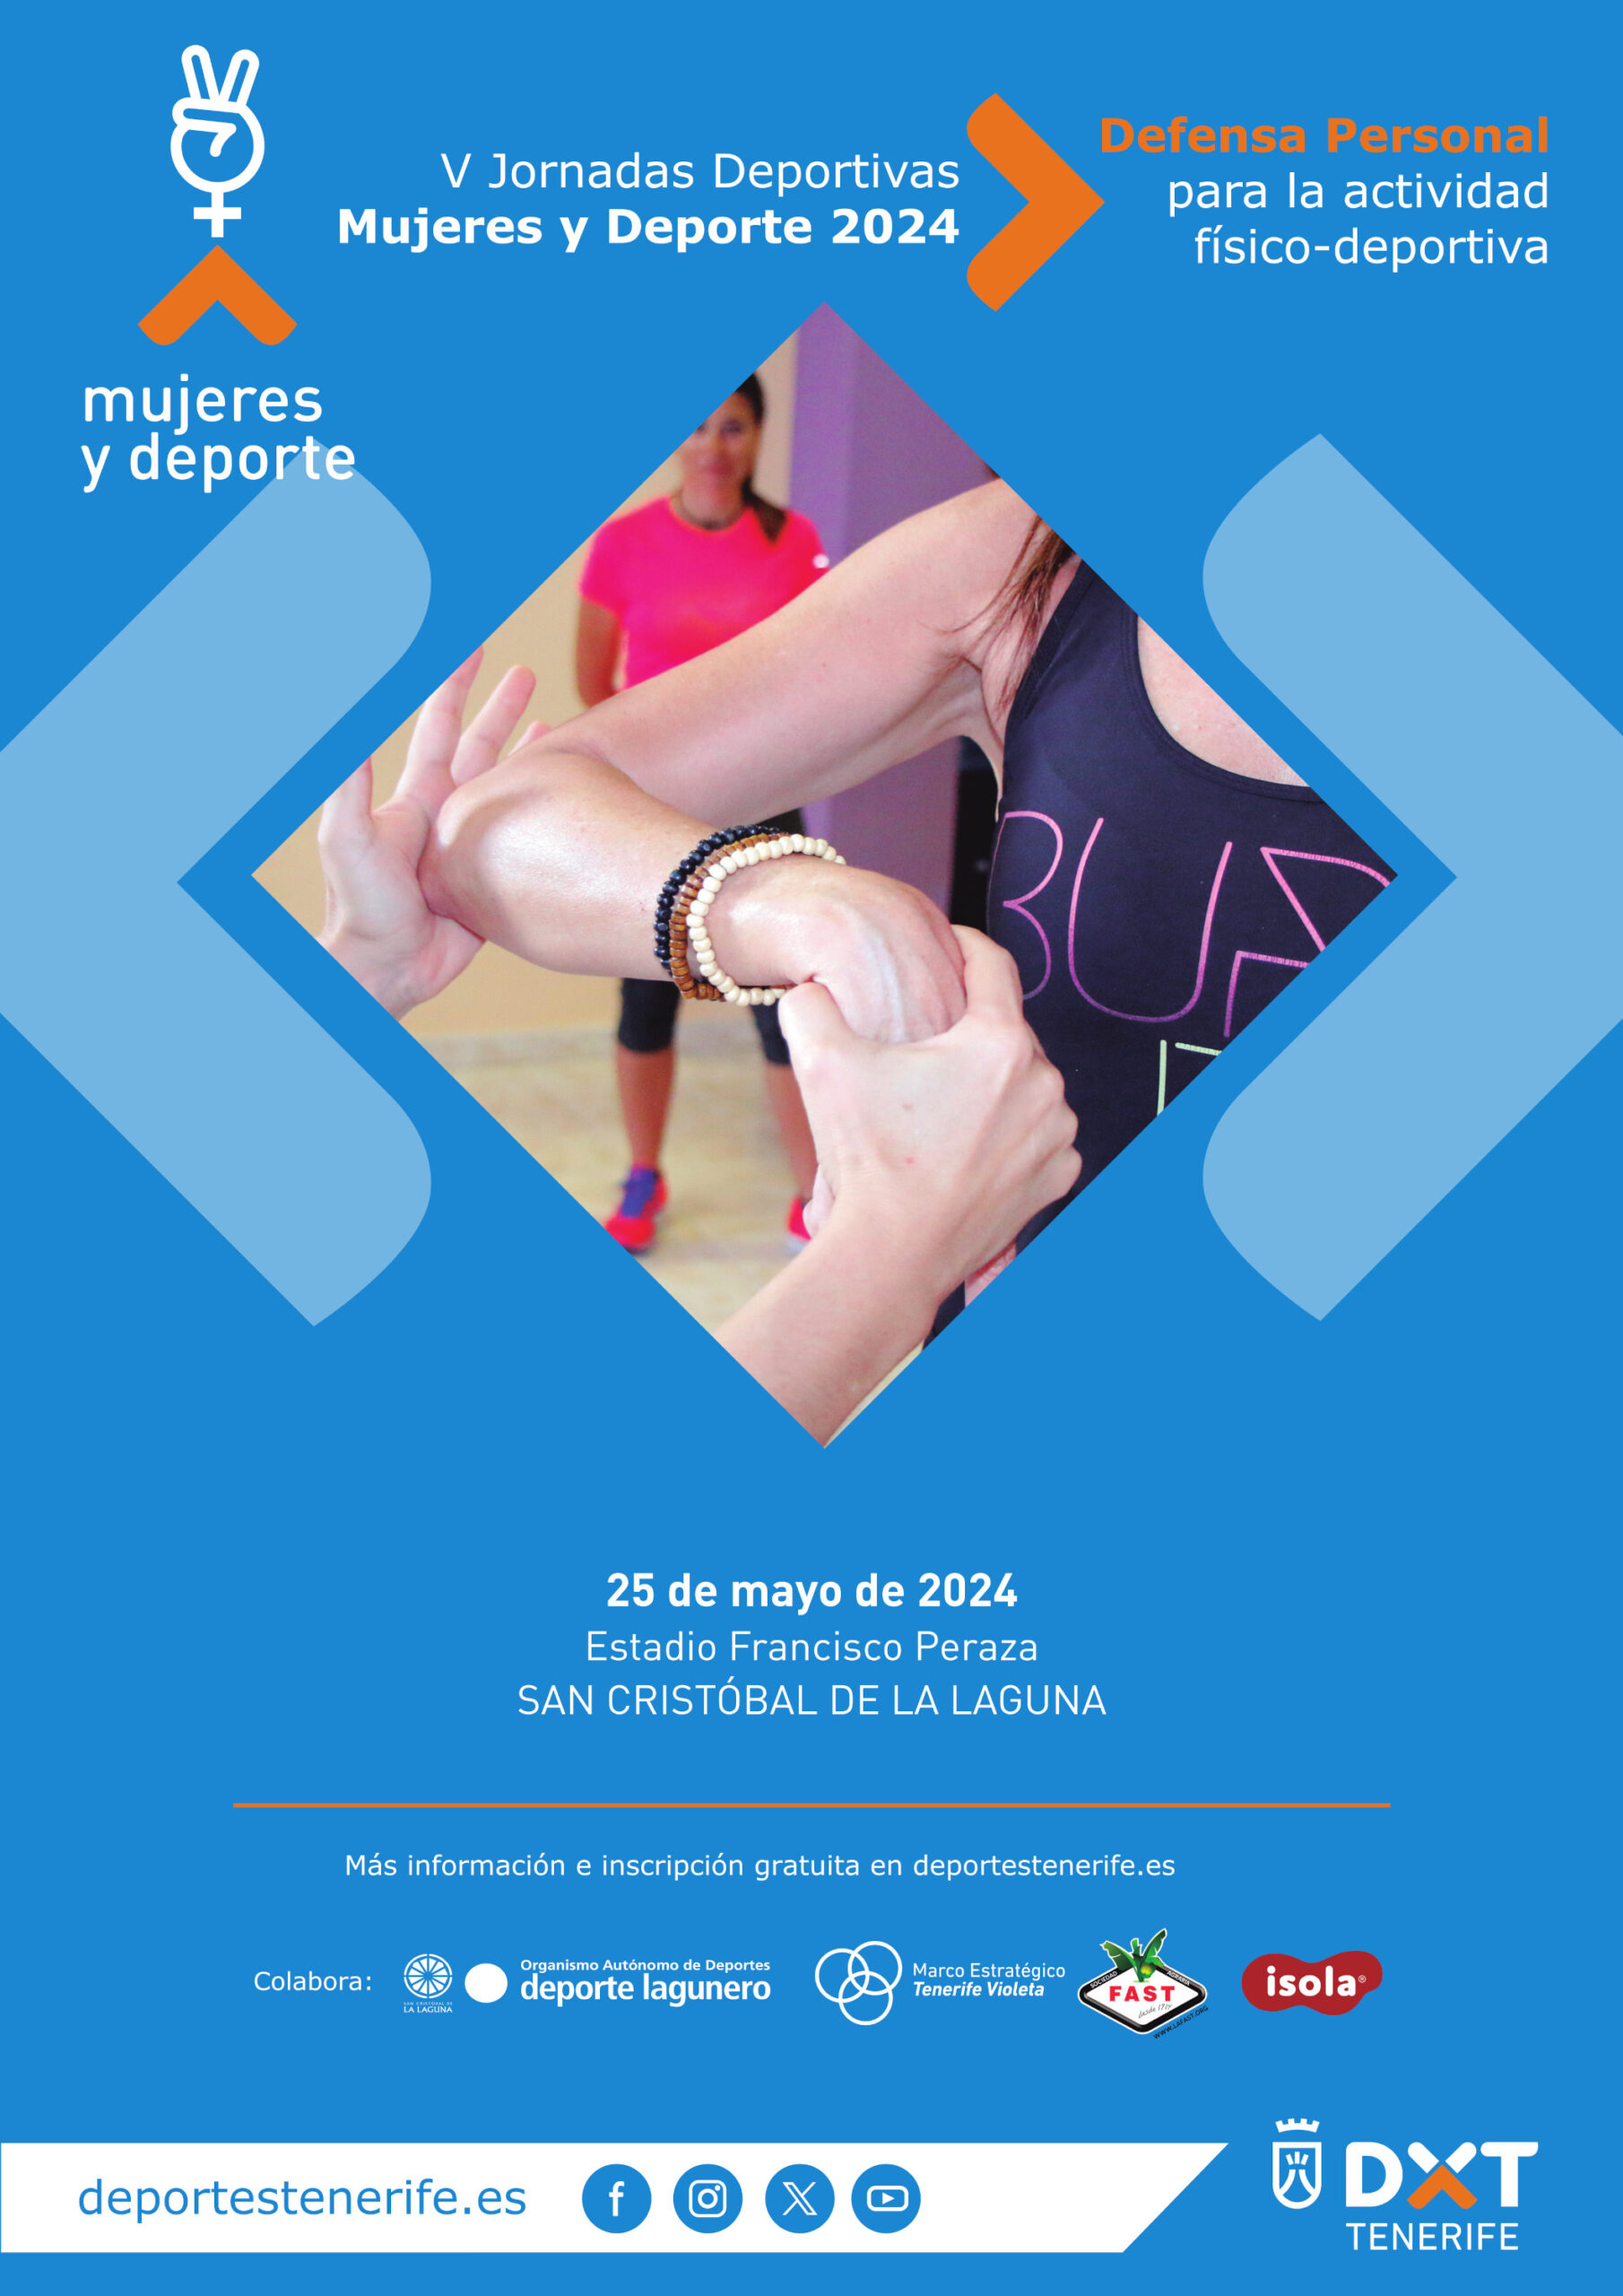 V Jornadas Deportivas Mujeres y Deporte 2024 - Defensa Personal para la Actividad Físico-deportiva